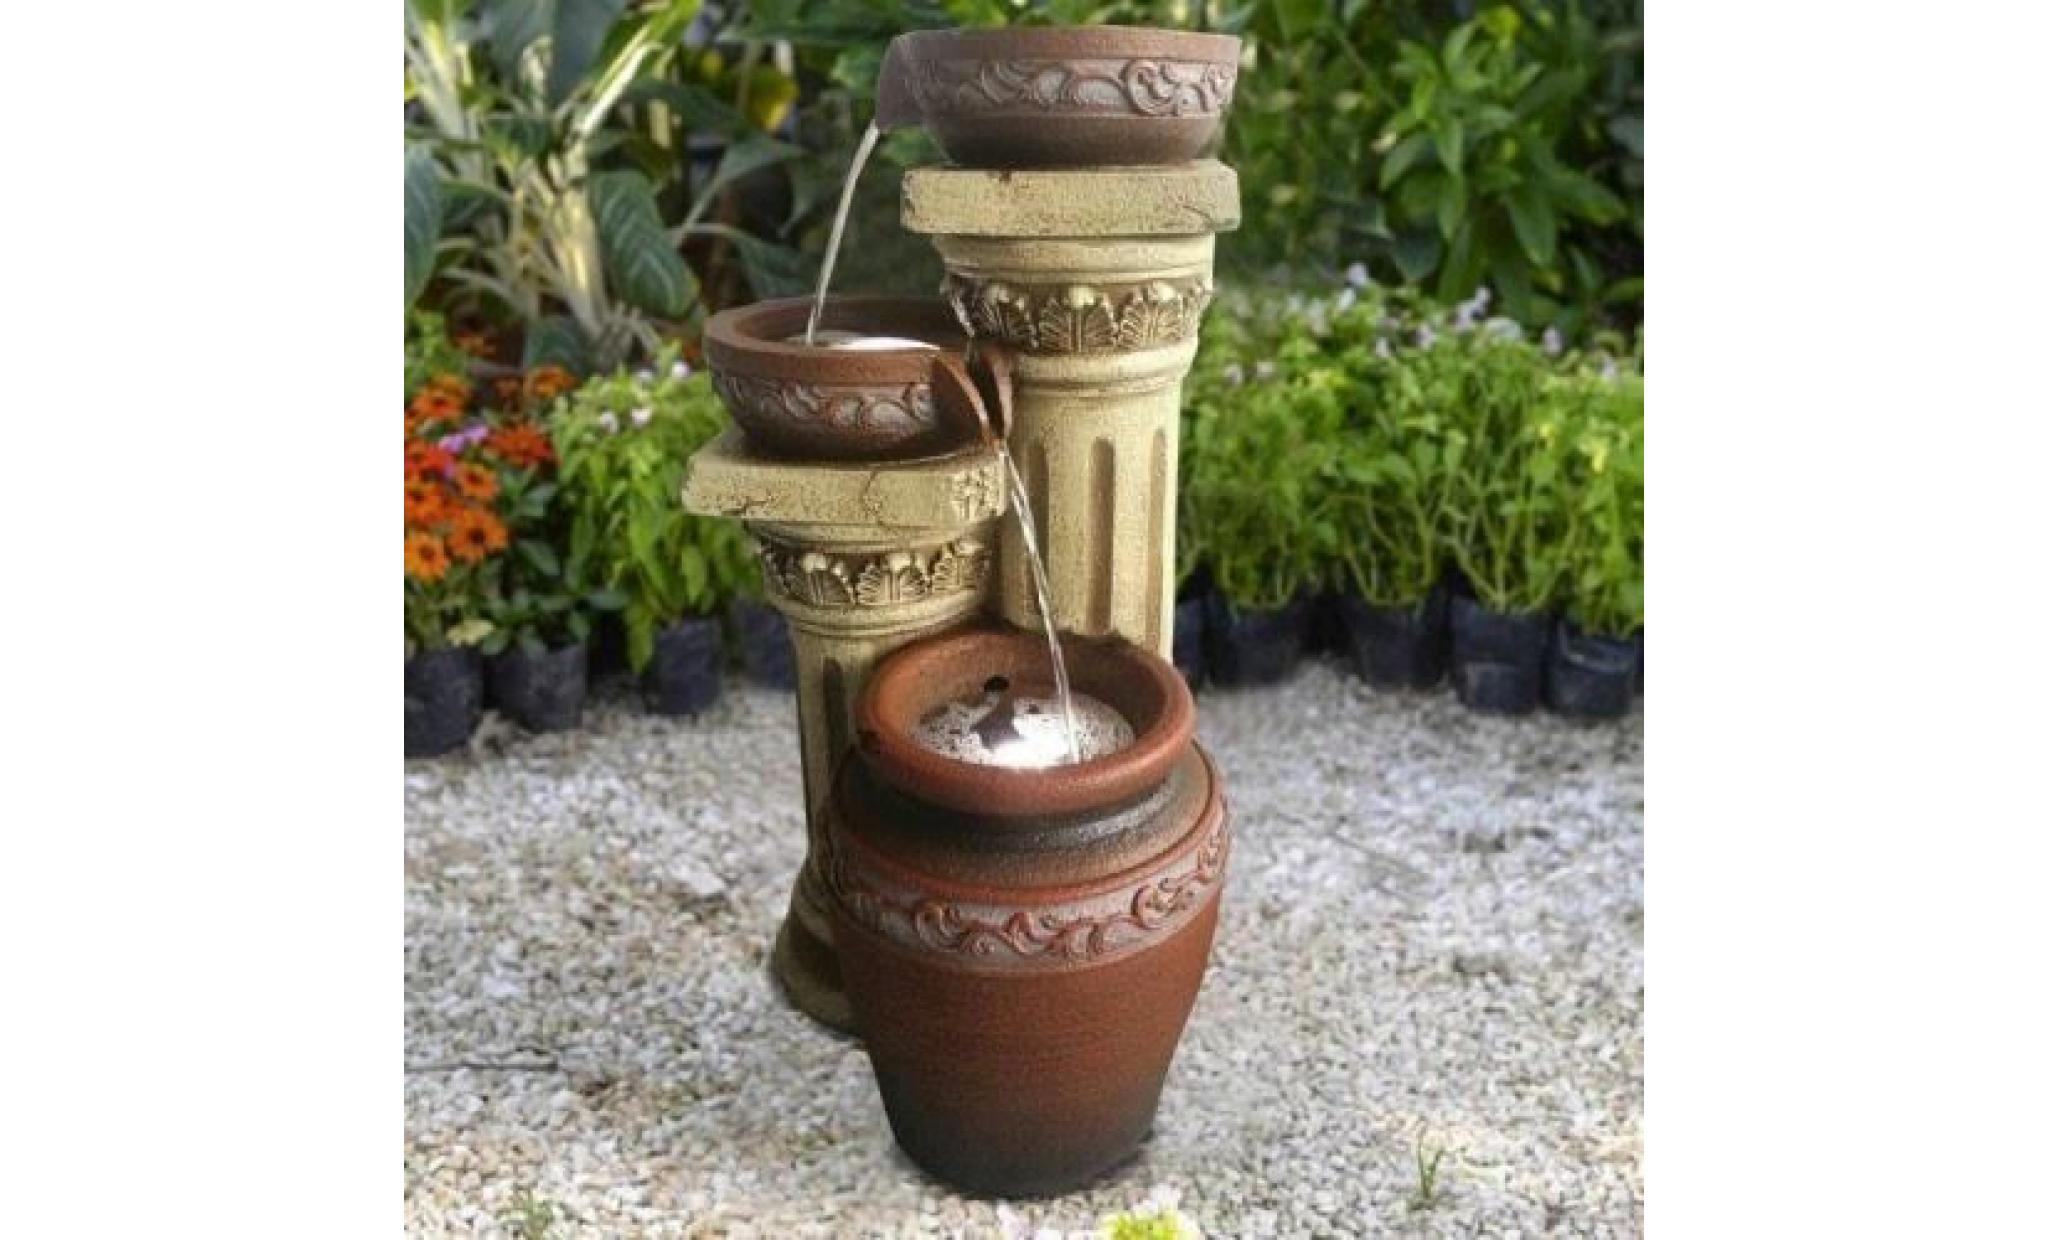 fontaine solaire fontaine solaire toscane jardin fontaine cascade set complet pour jardin et terrasse jour et nuit ! ✔ neuf